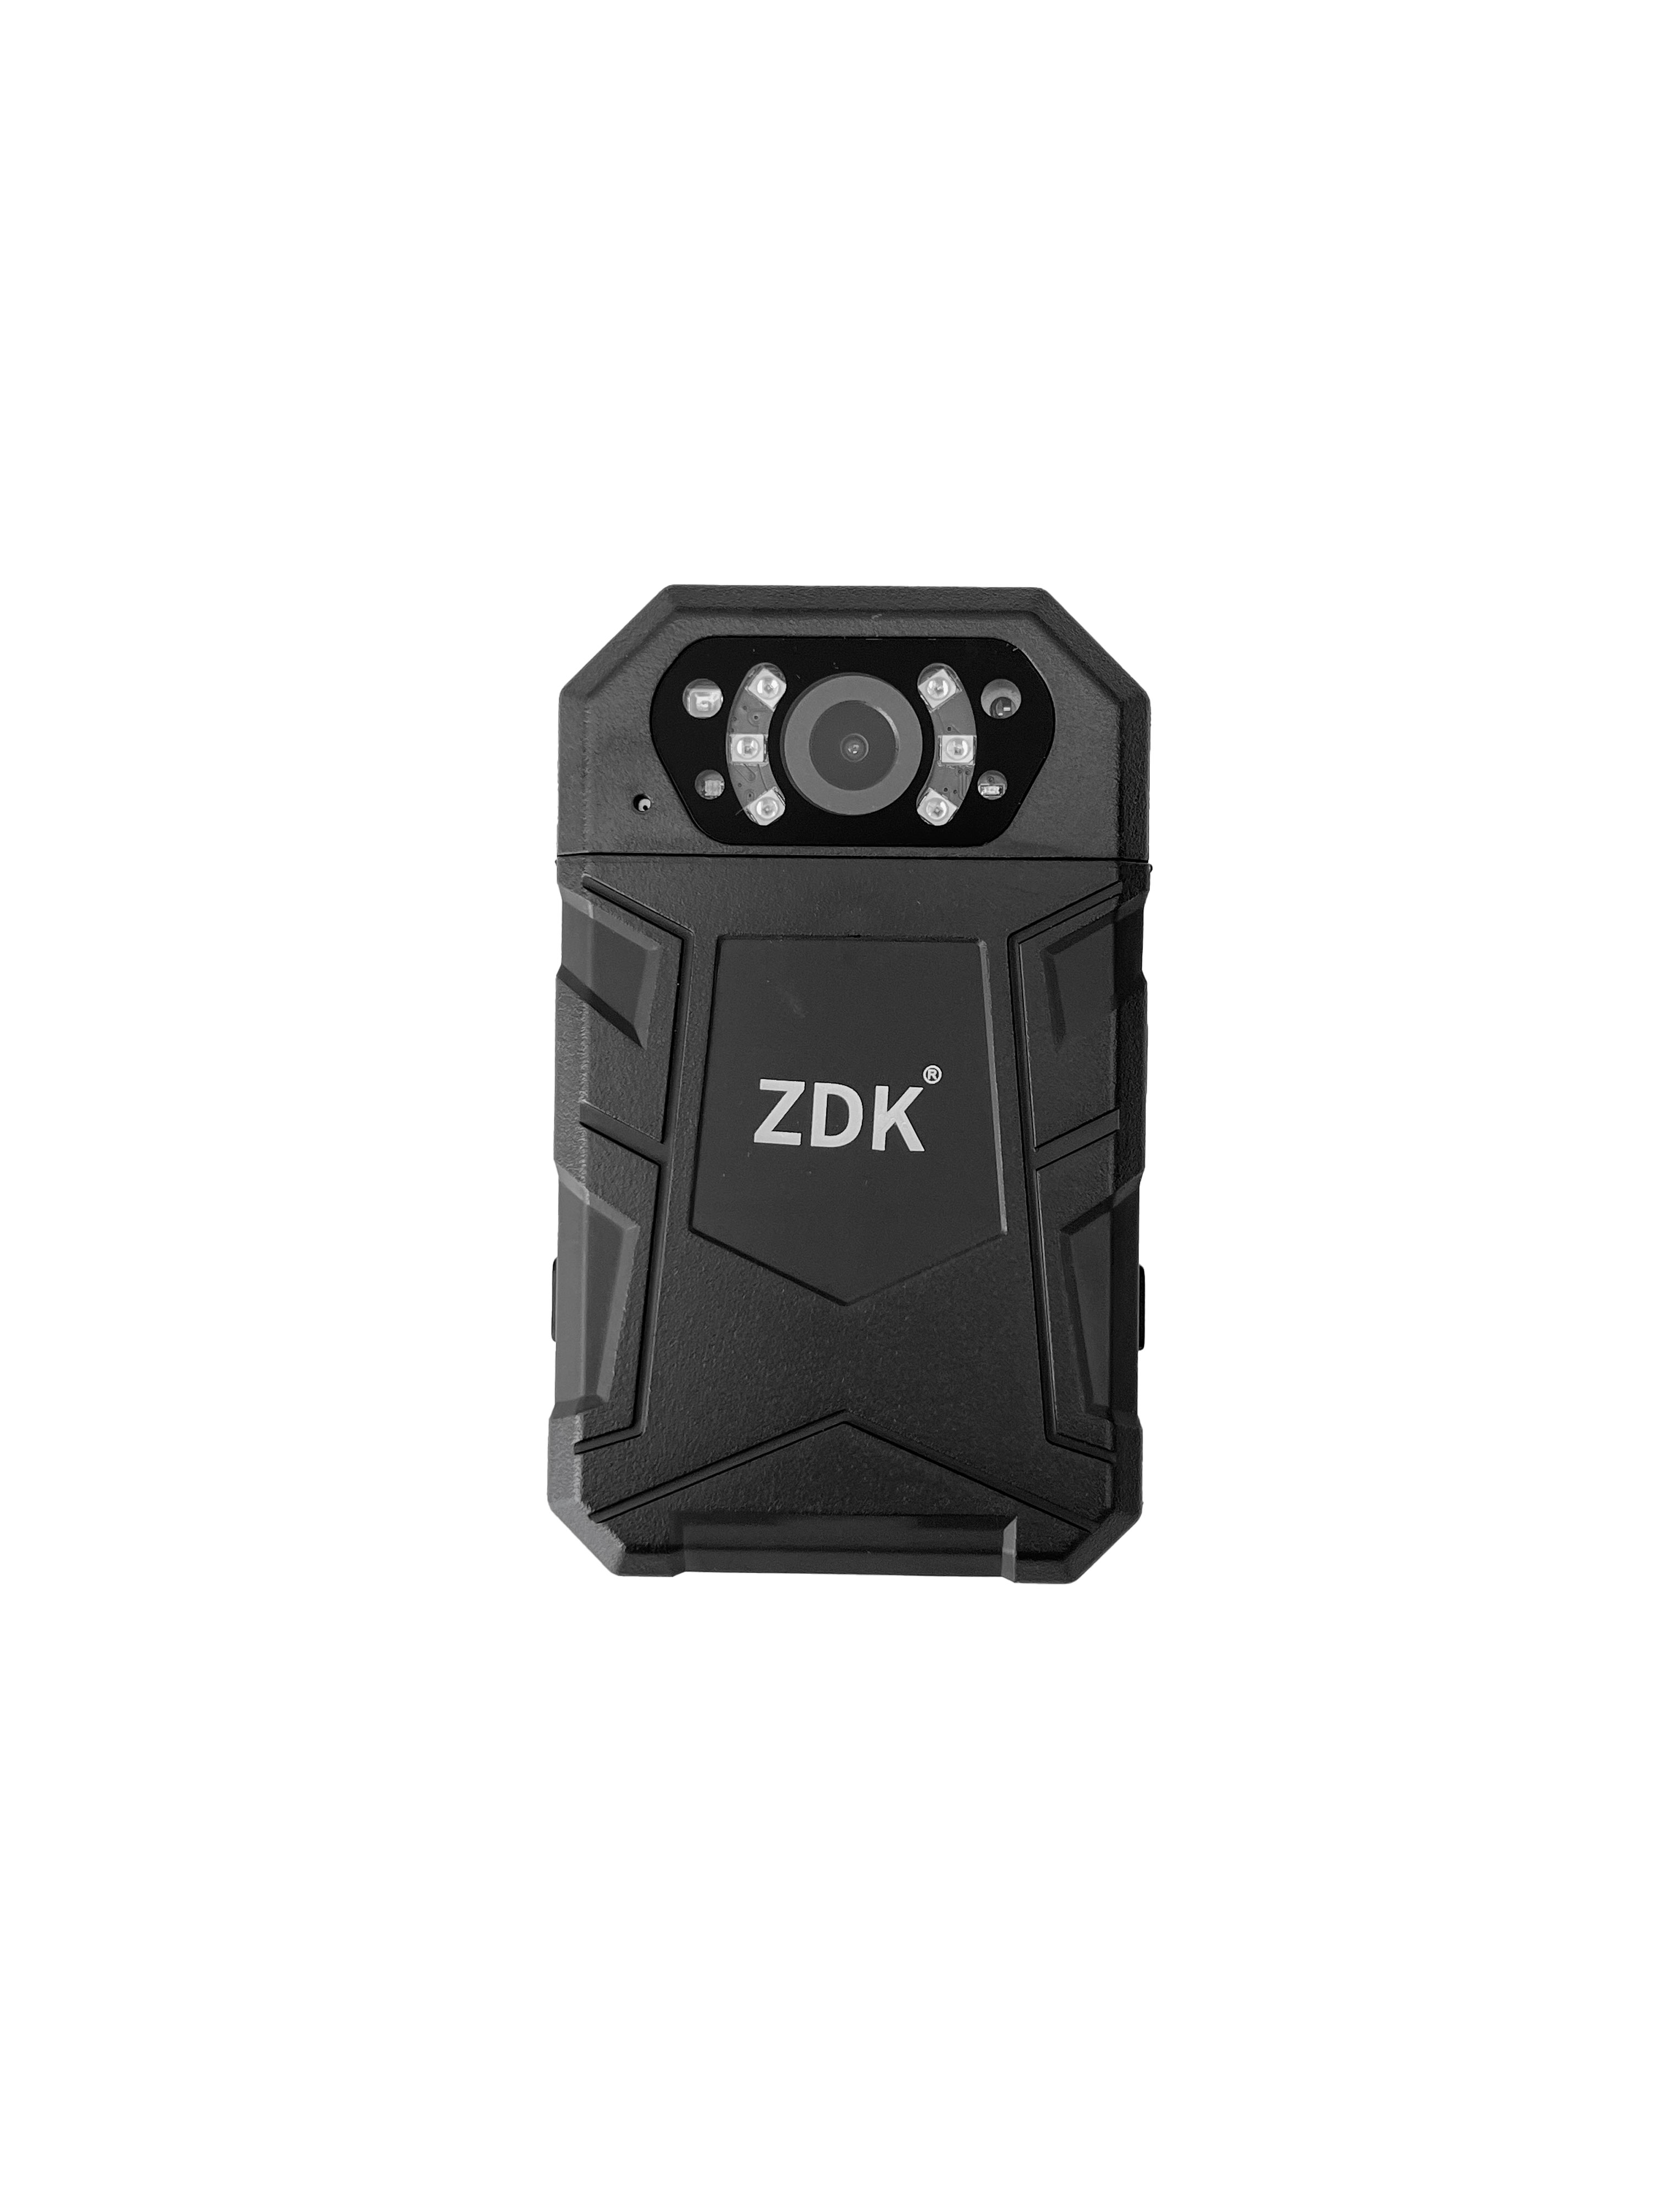 Персональный носимый видеорегистратор ZDK M25 (32 Гб, 170 градусов, 3300 mAh, 4K)